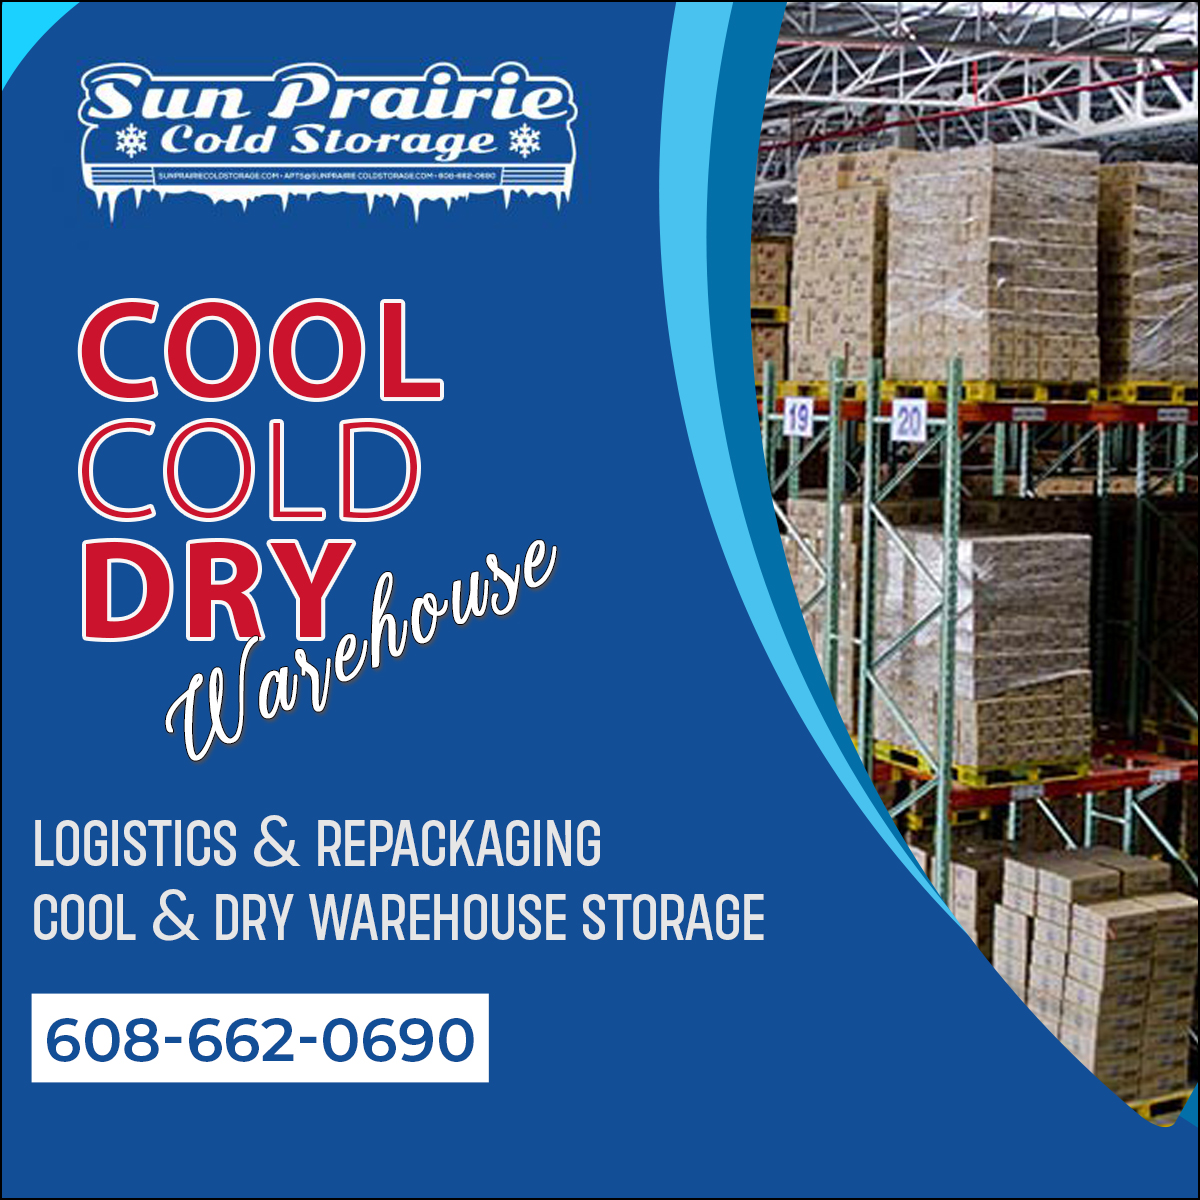 Sun Prairie Cold Storage